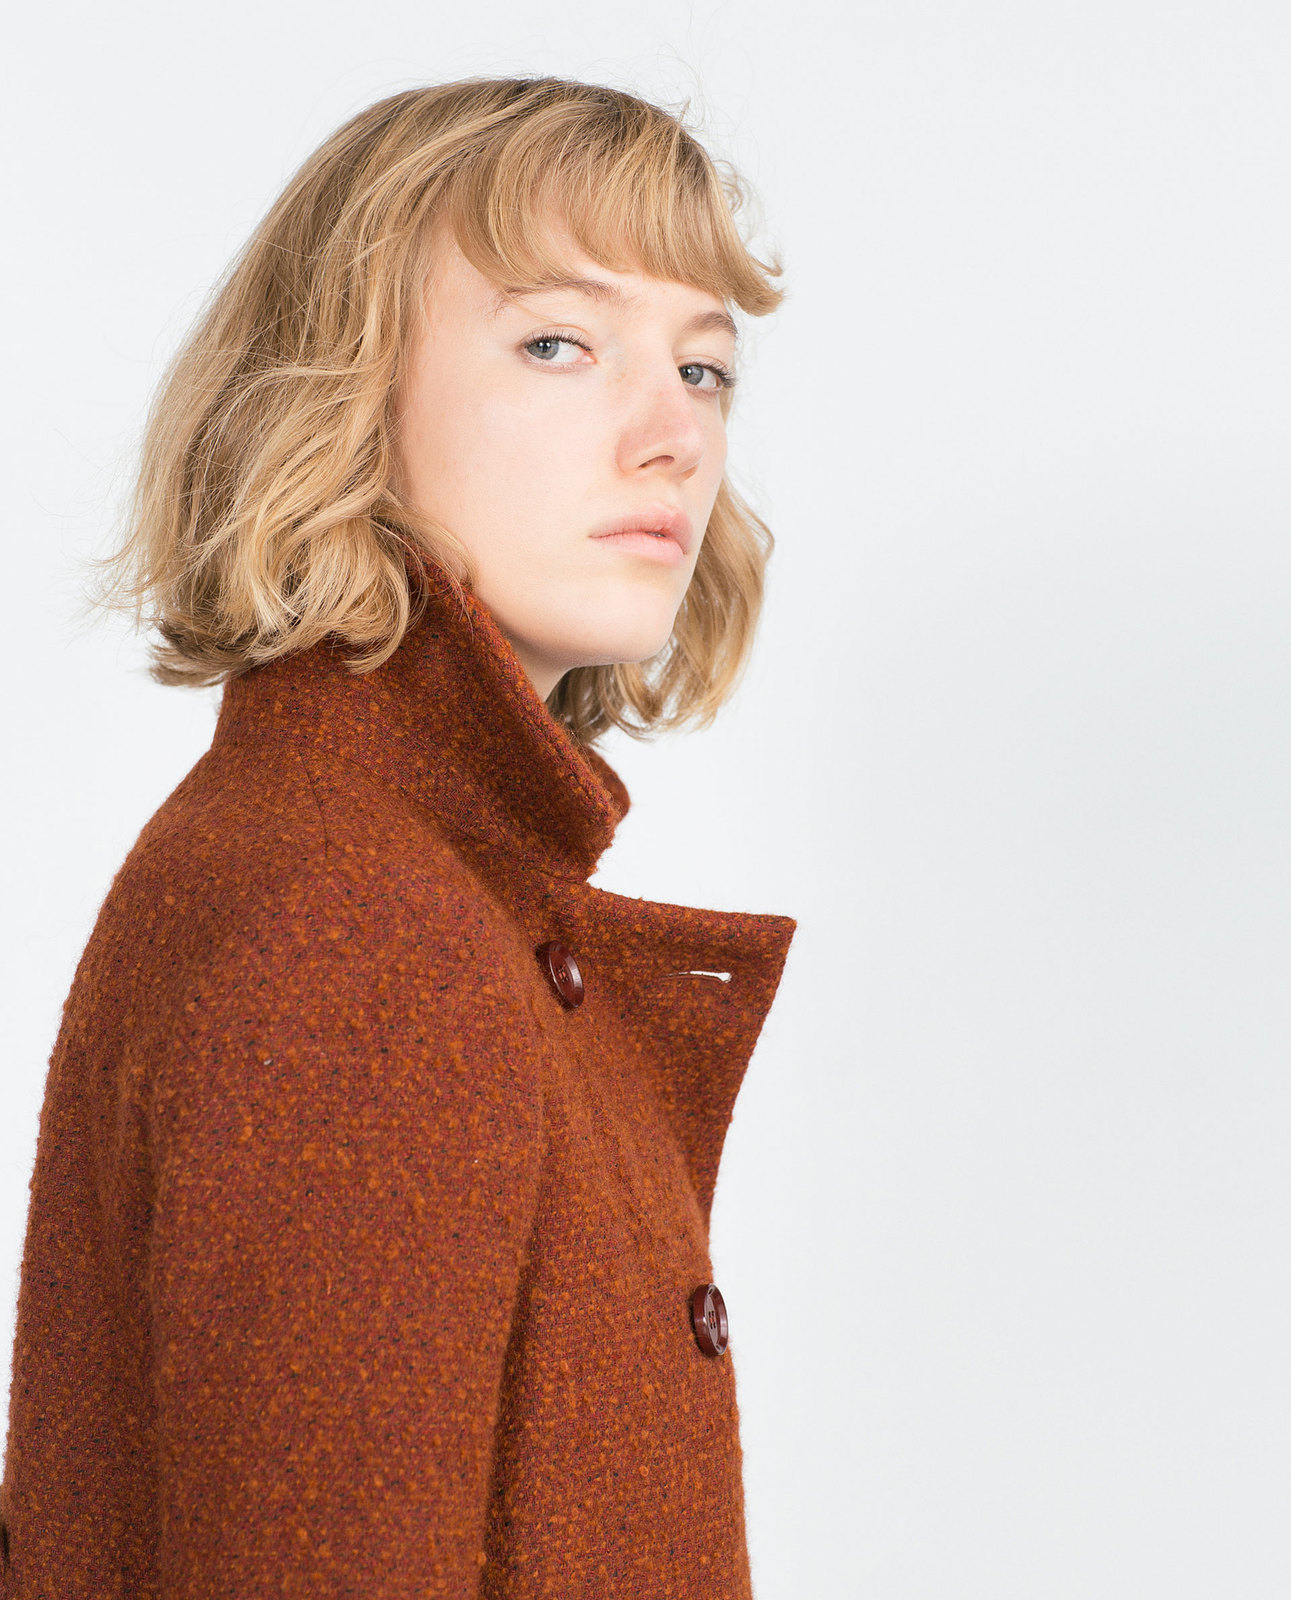 Zara konyak színű női buklé kabát 2015.10.15 fotója